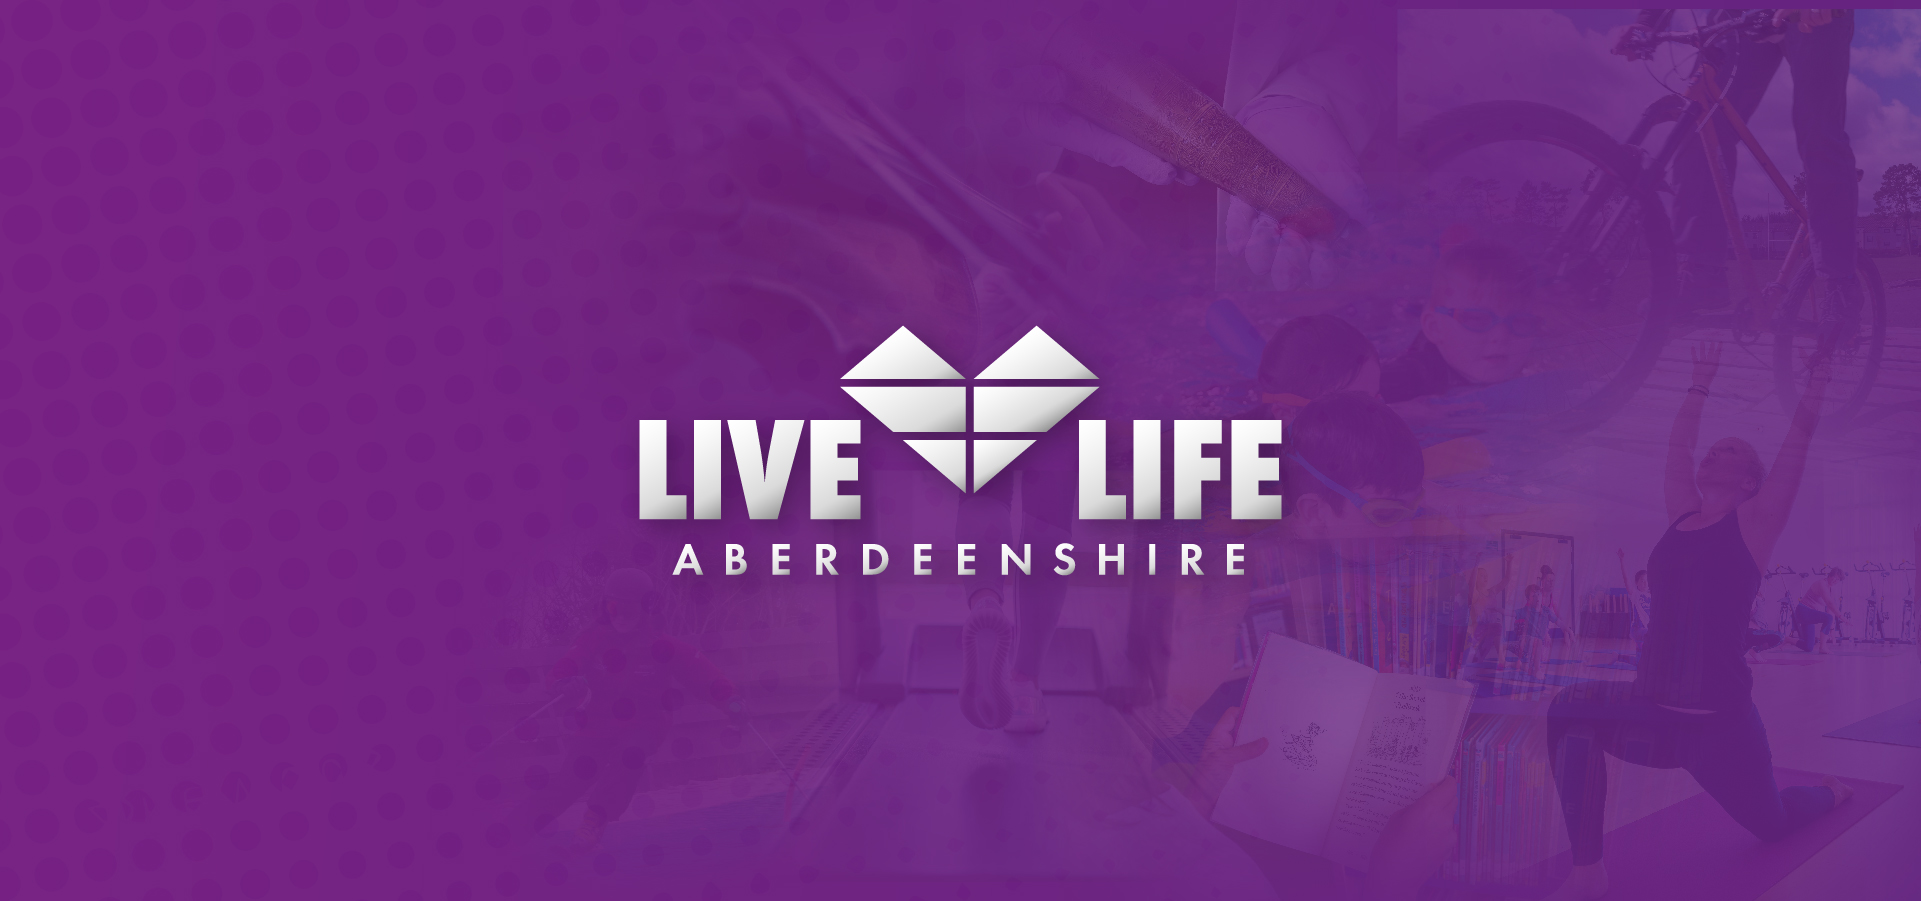 Live Life Aberdeenshire logo.